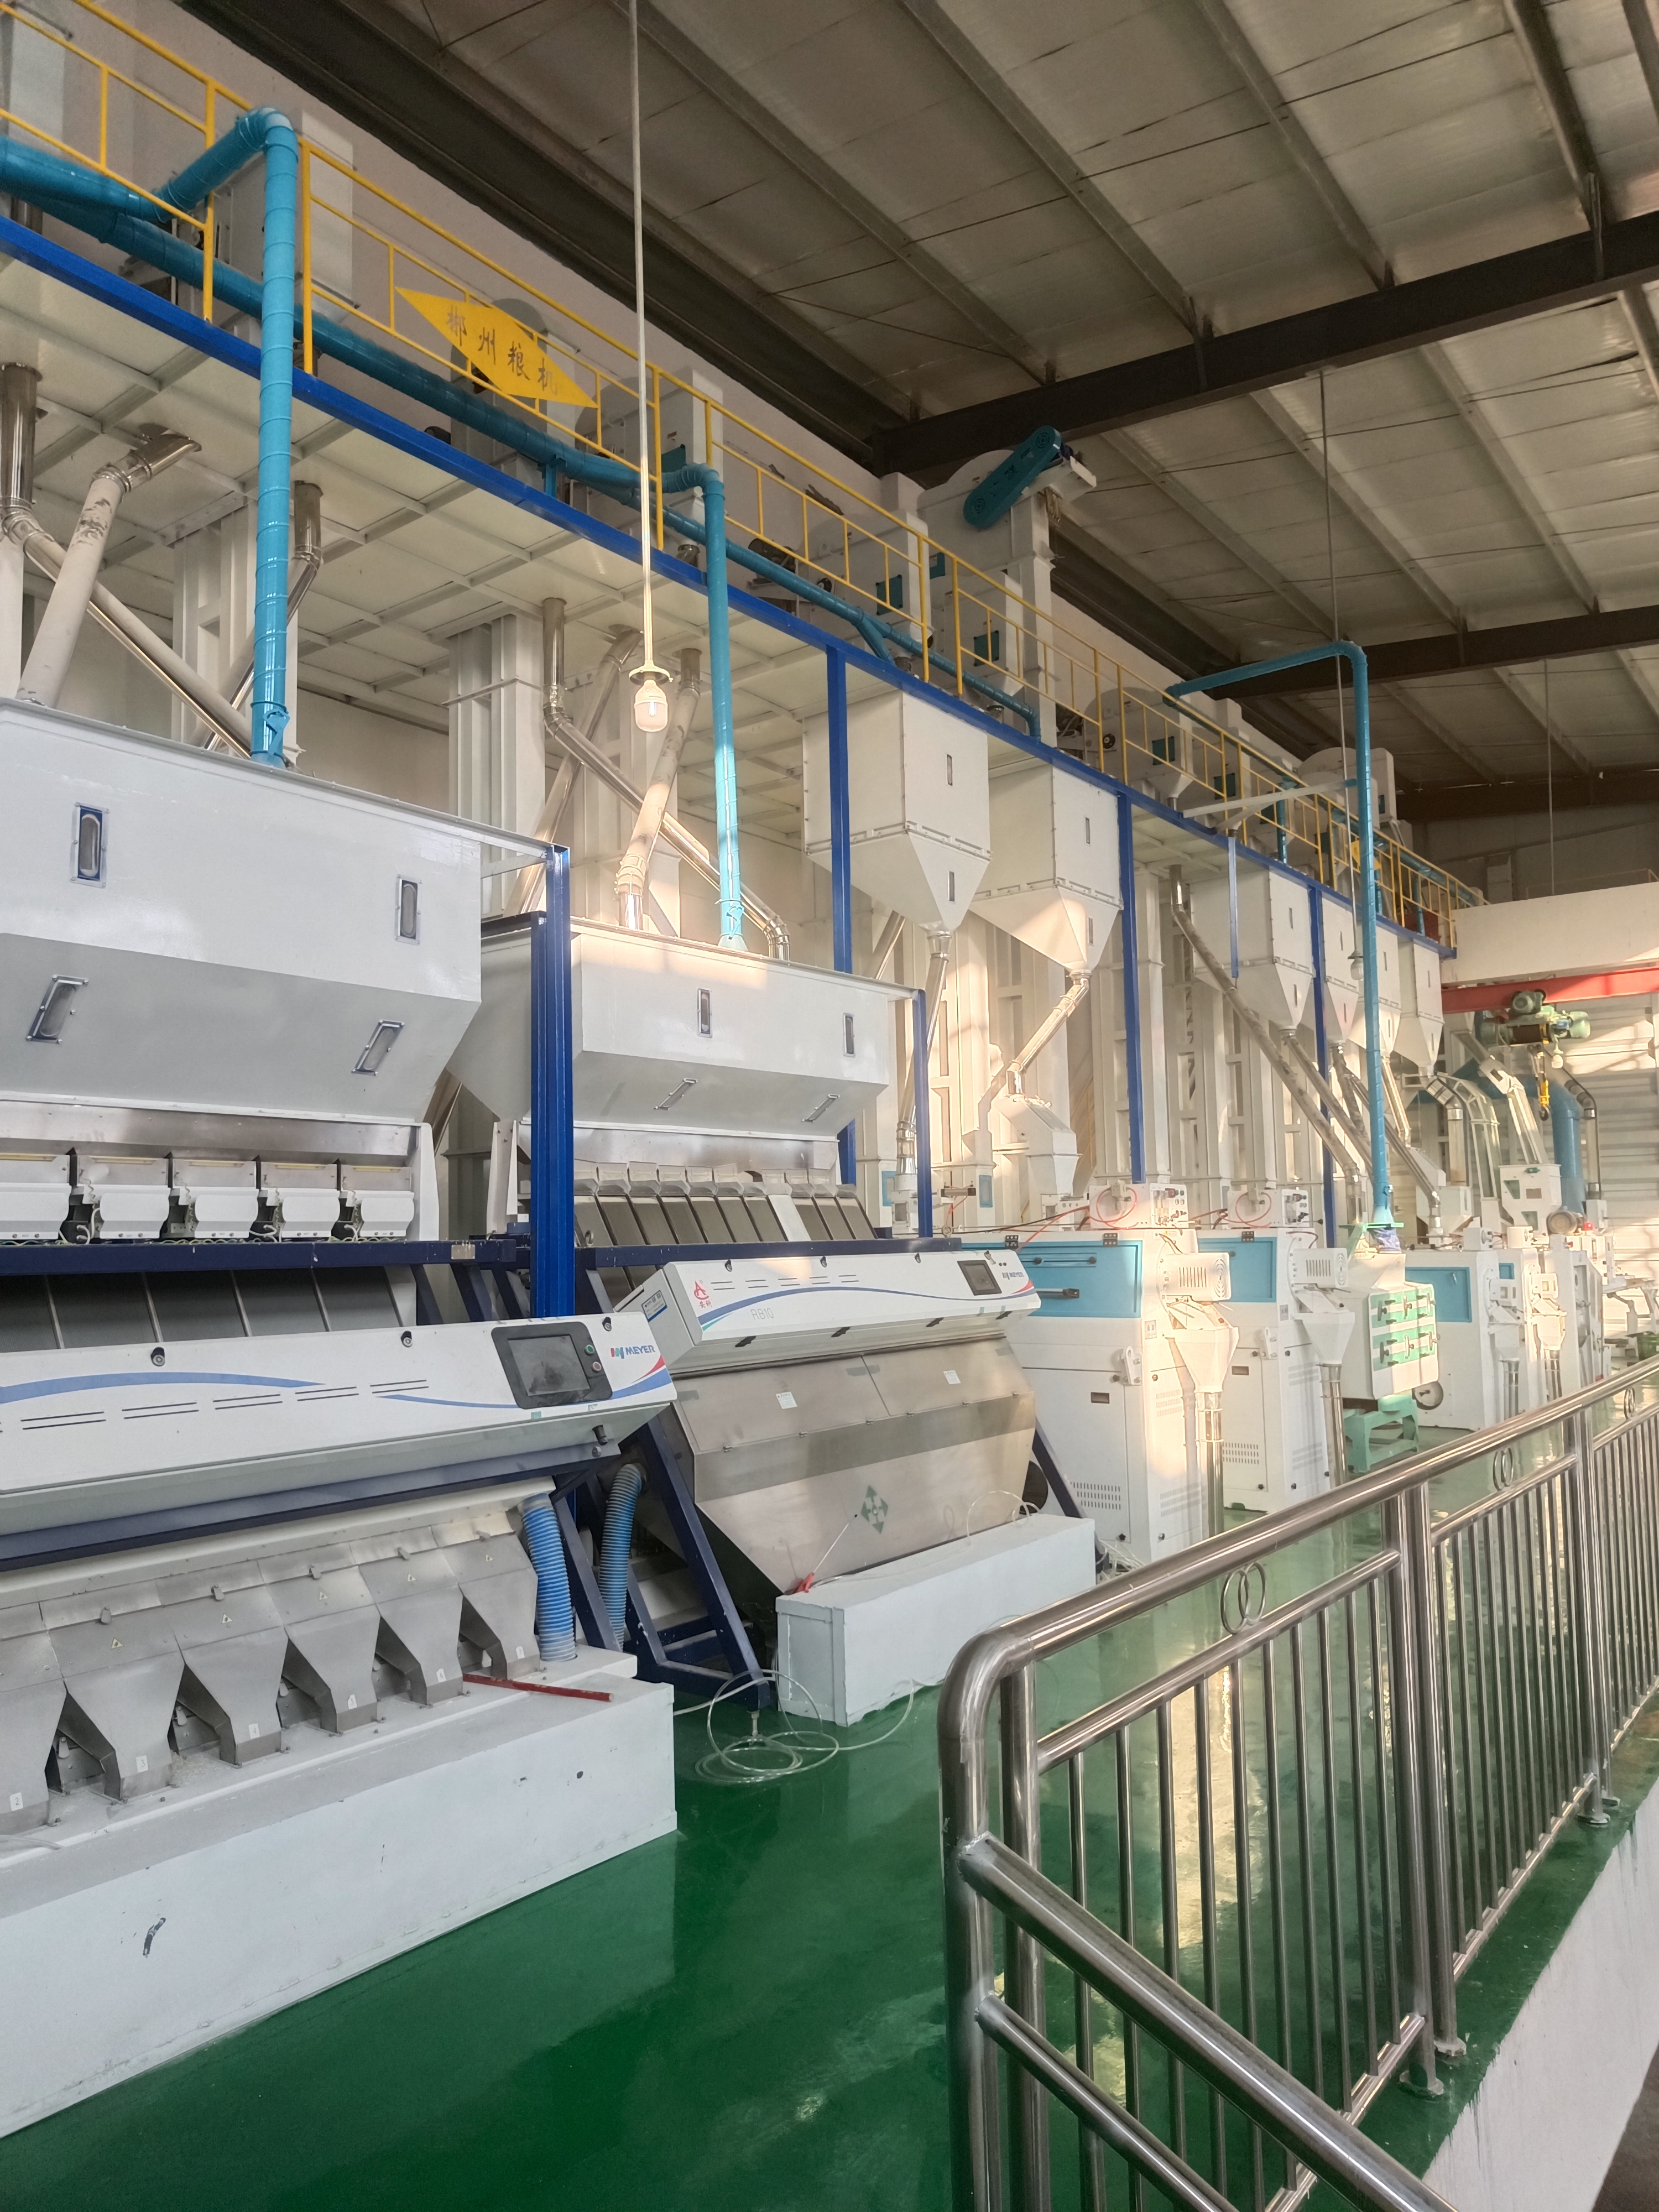 思南縣南江糧食購銷有限責任公司日產120噸大米生產線技術改造升級。